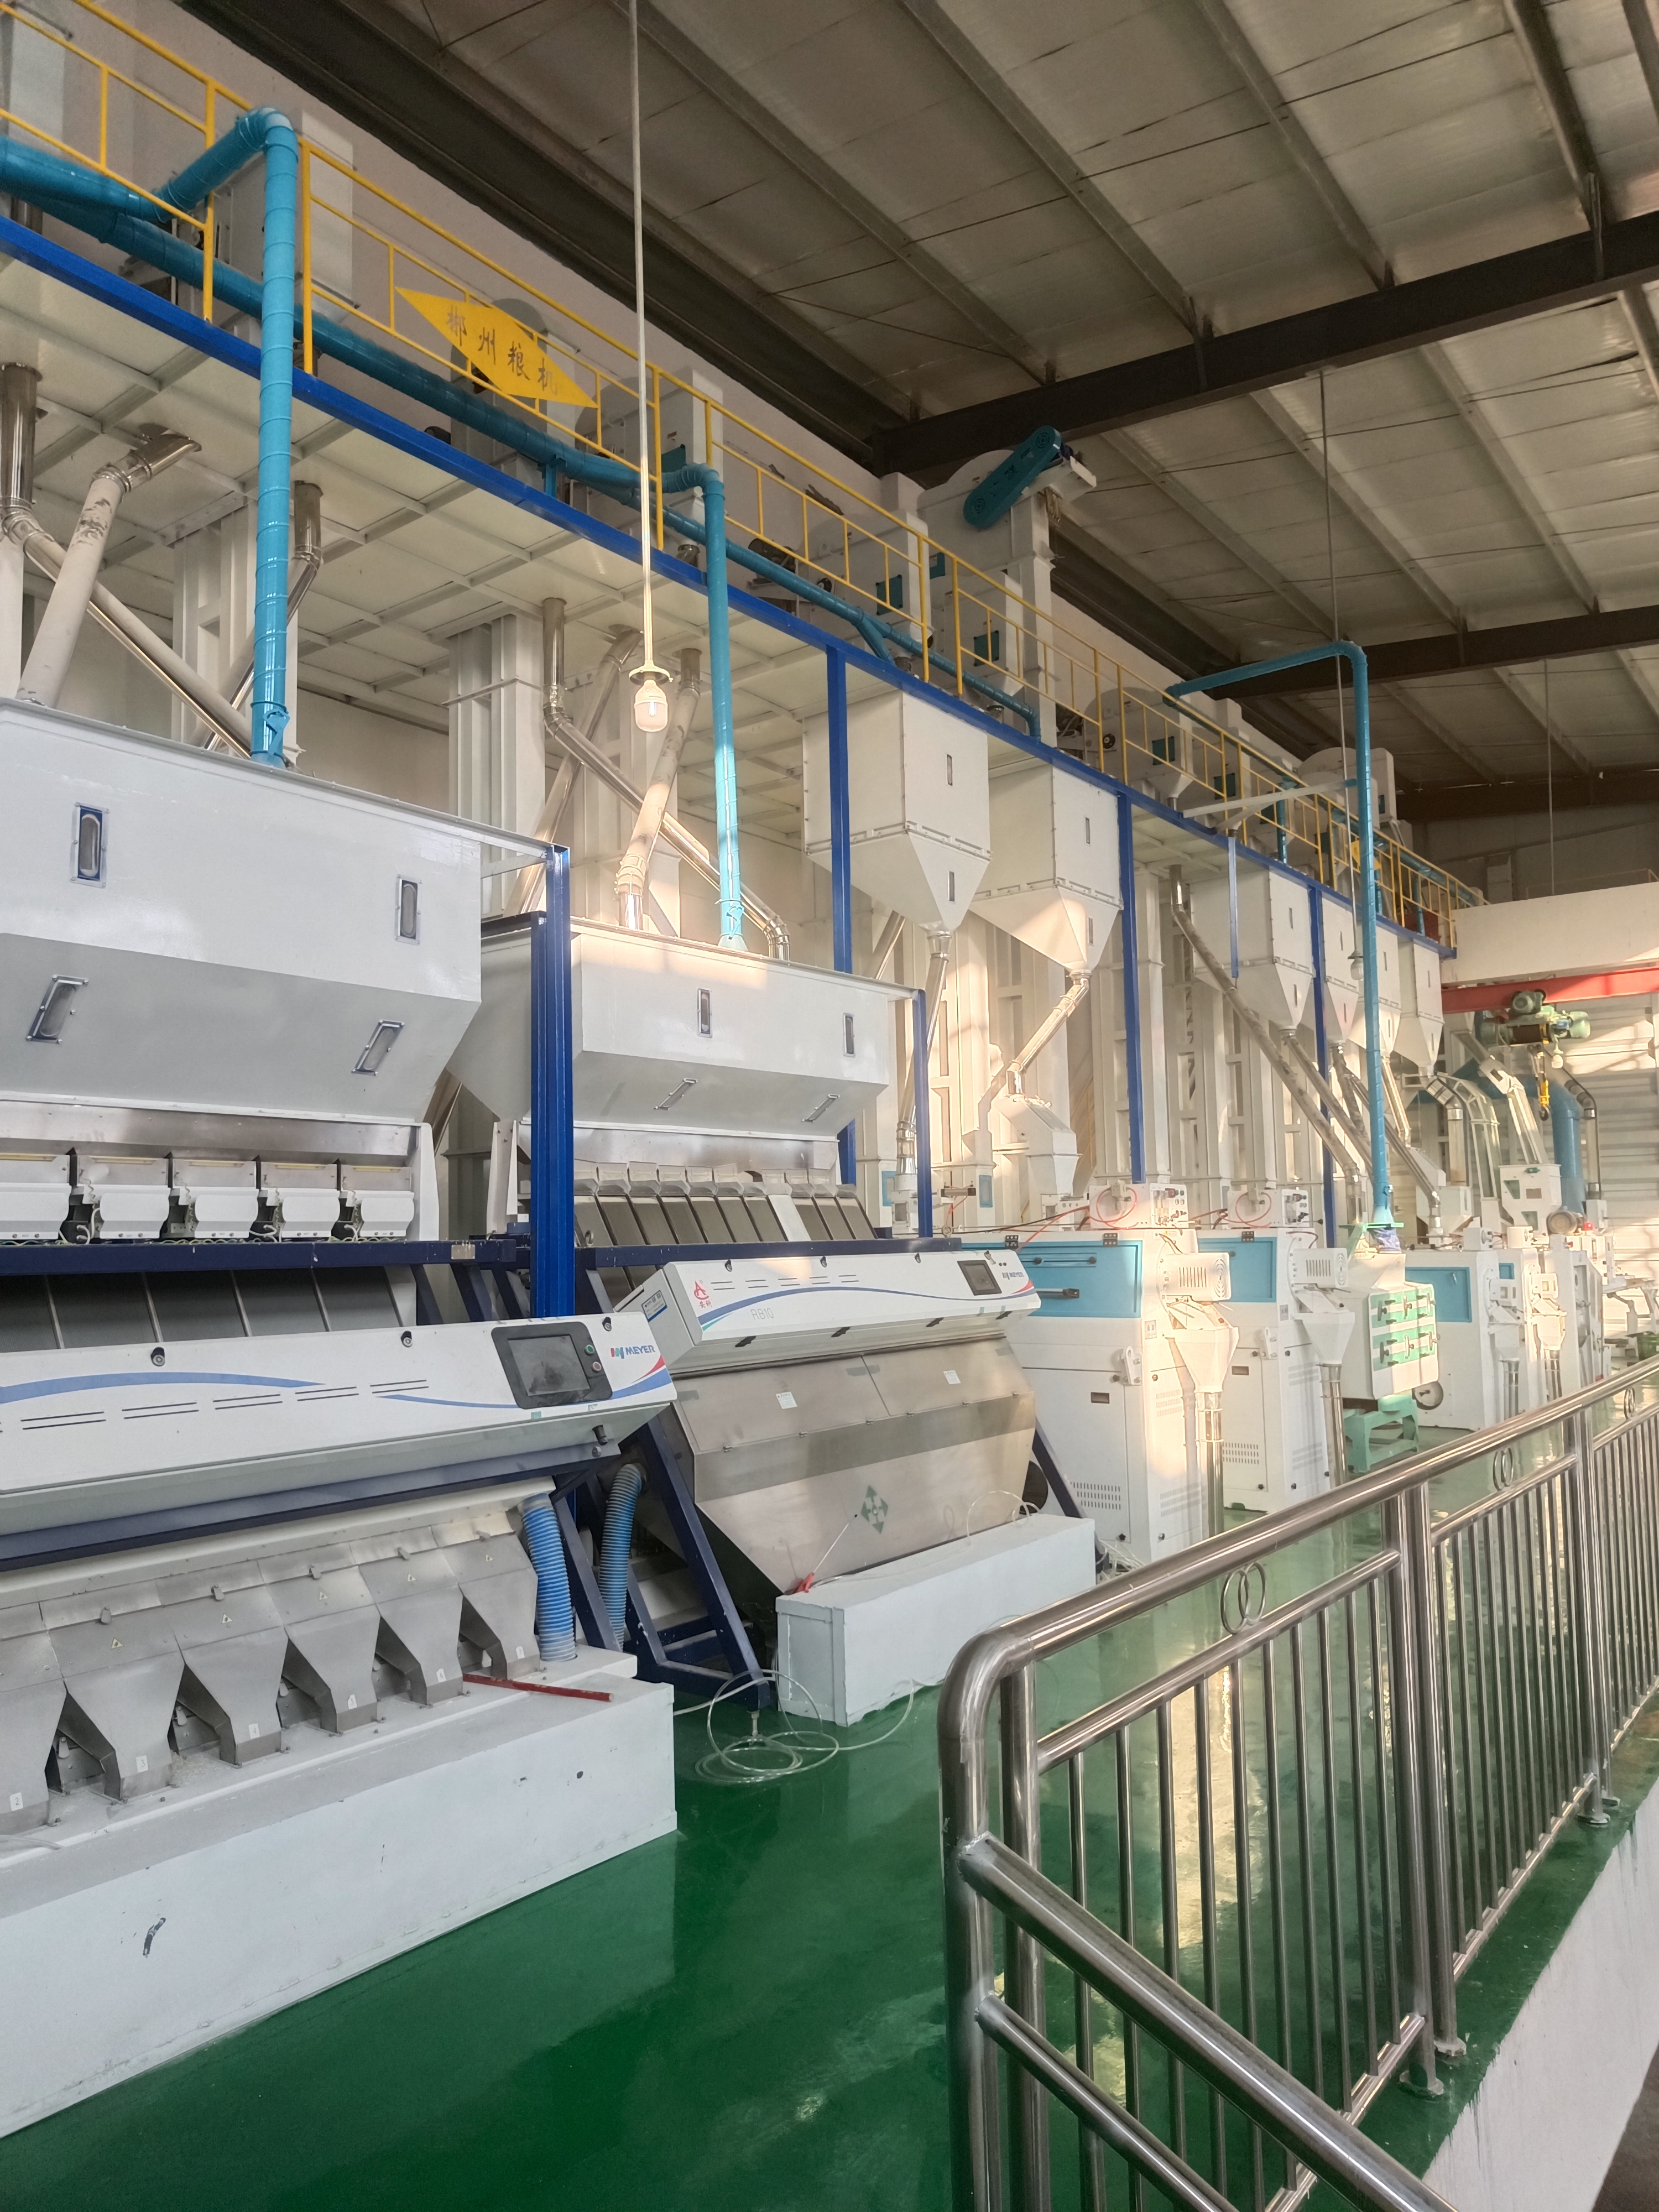 思南縣南江糧食購銷有限責任公司日產120噸大米生產線技術改造升級。